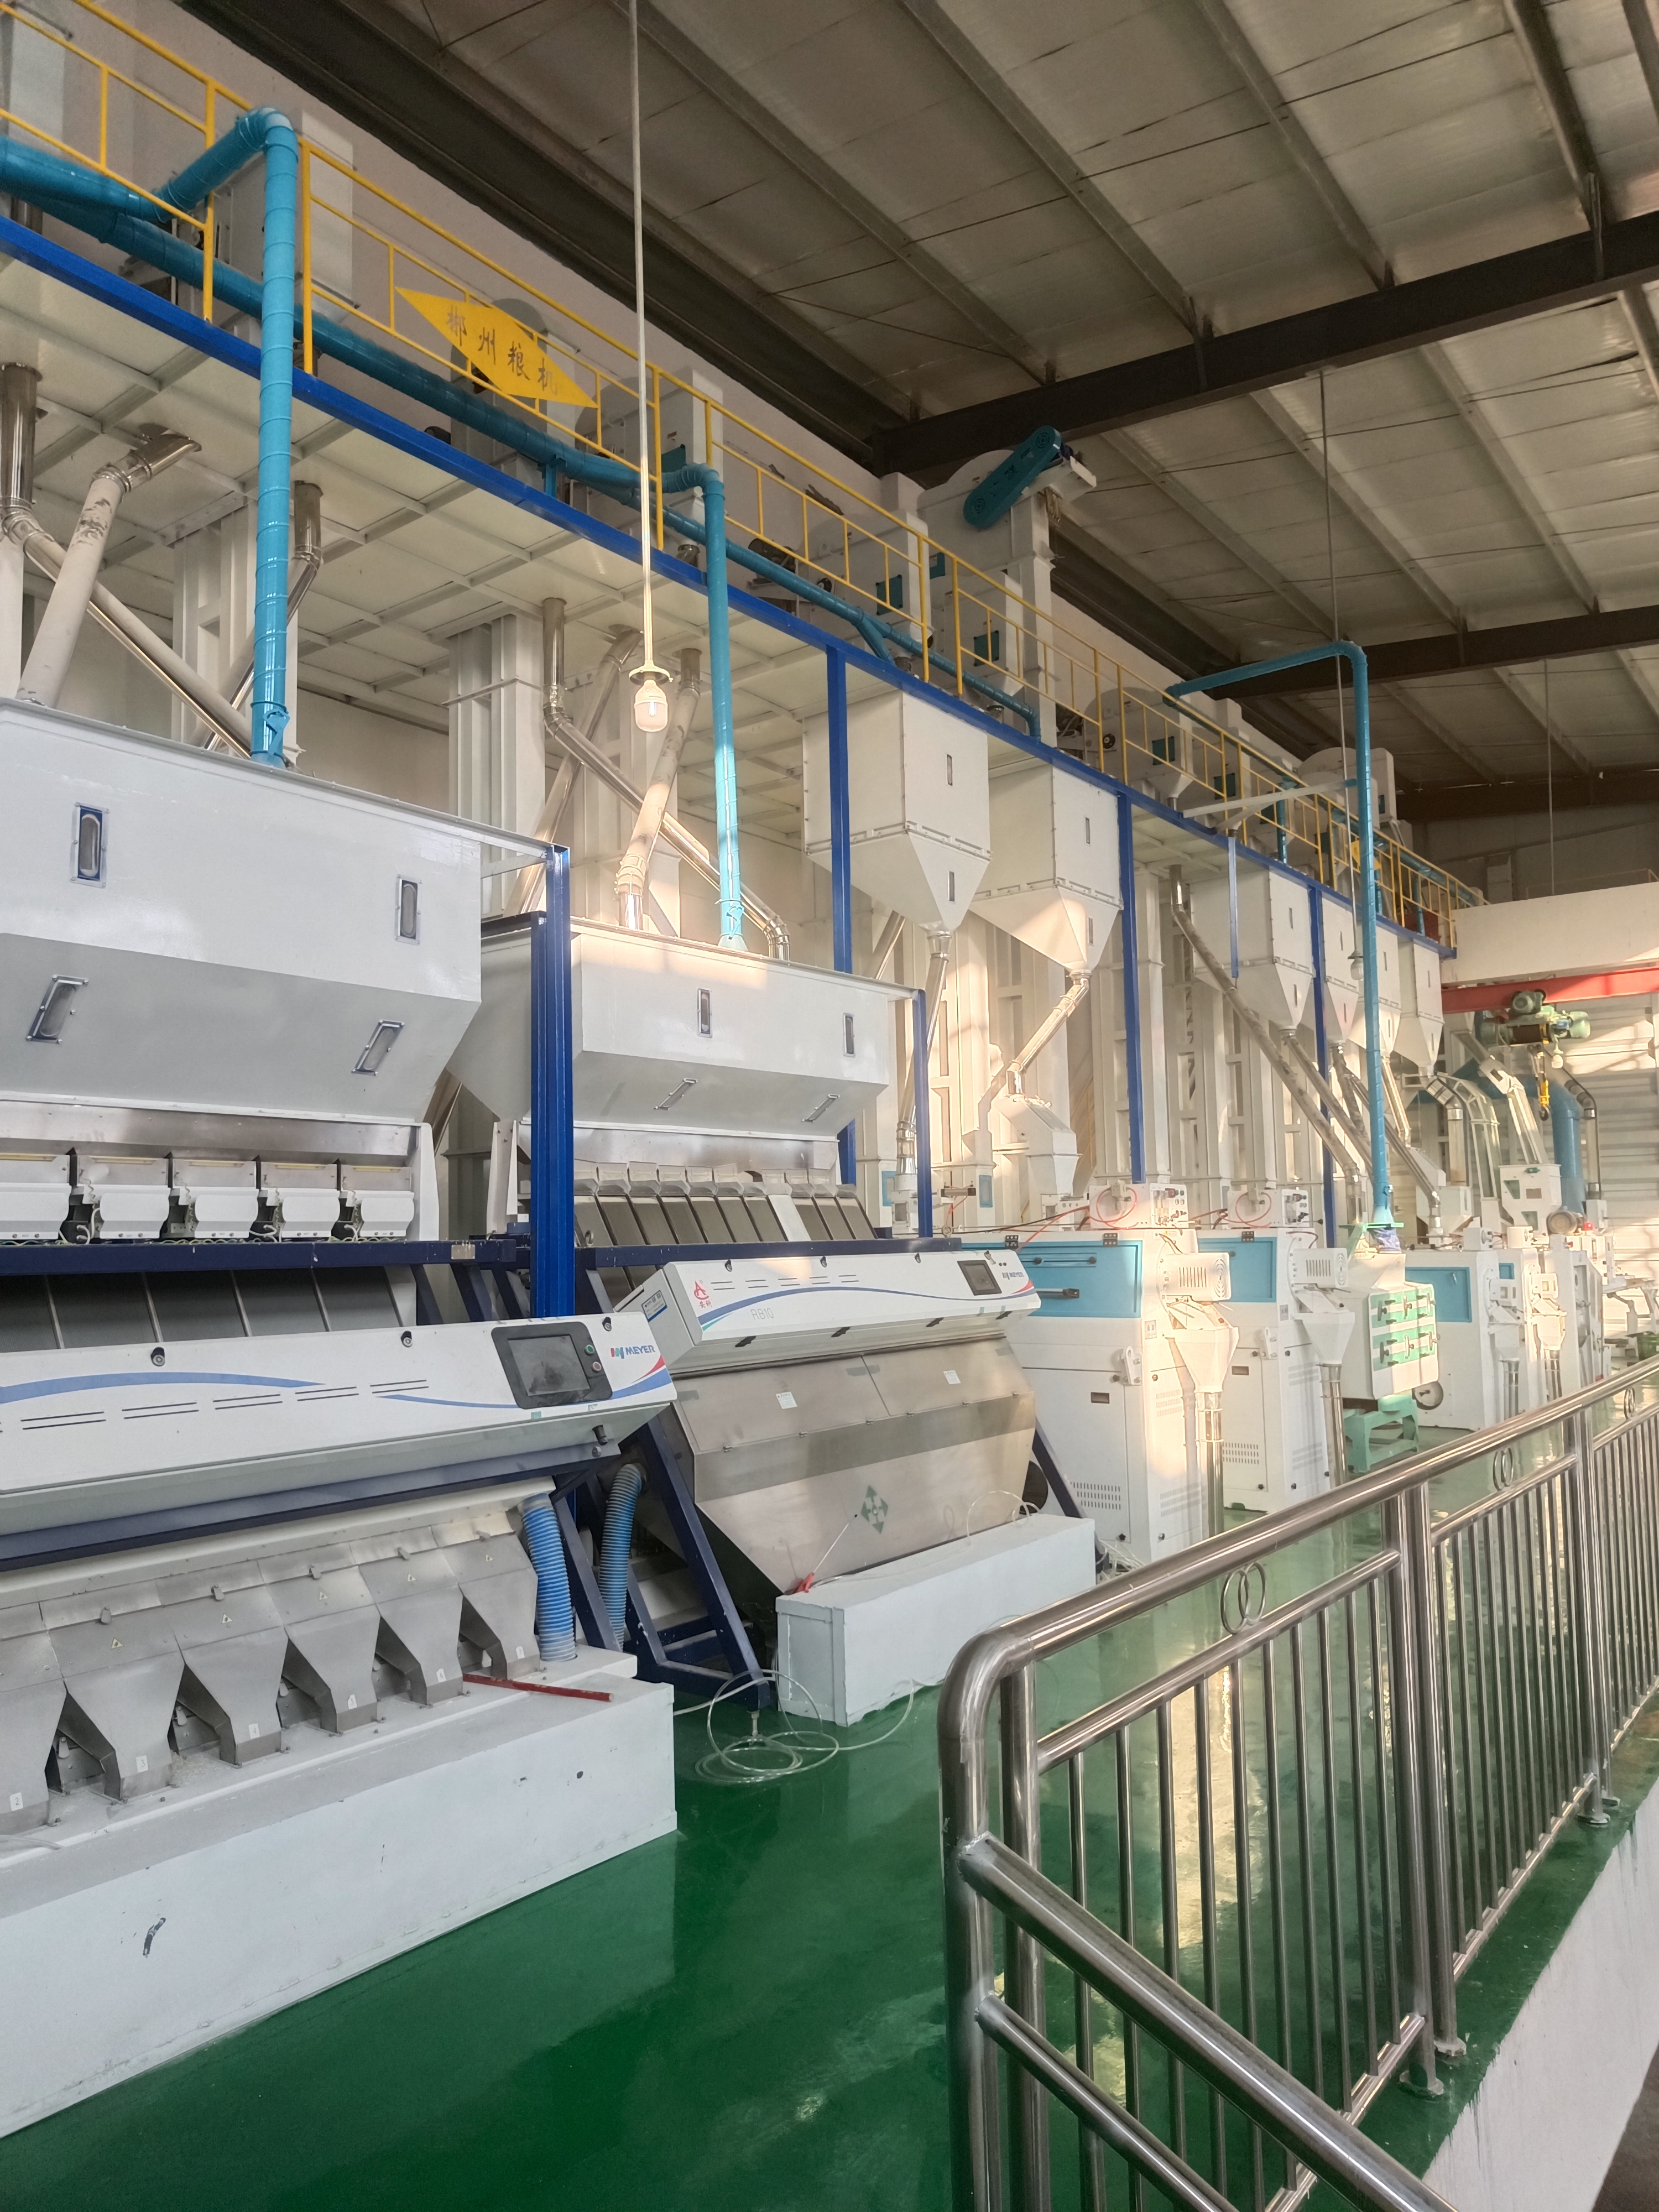 思南縣南江糧食購銷有限責任公司日產120噸大米生產線技術改造升級。